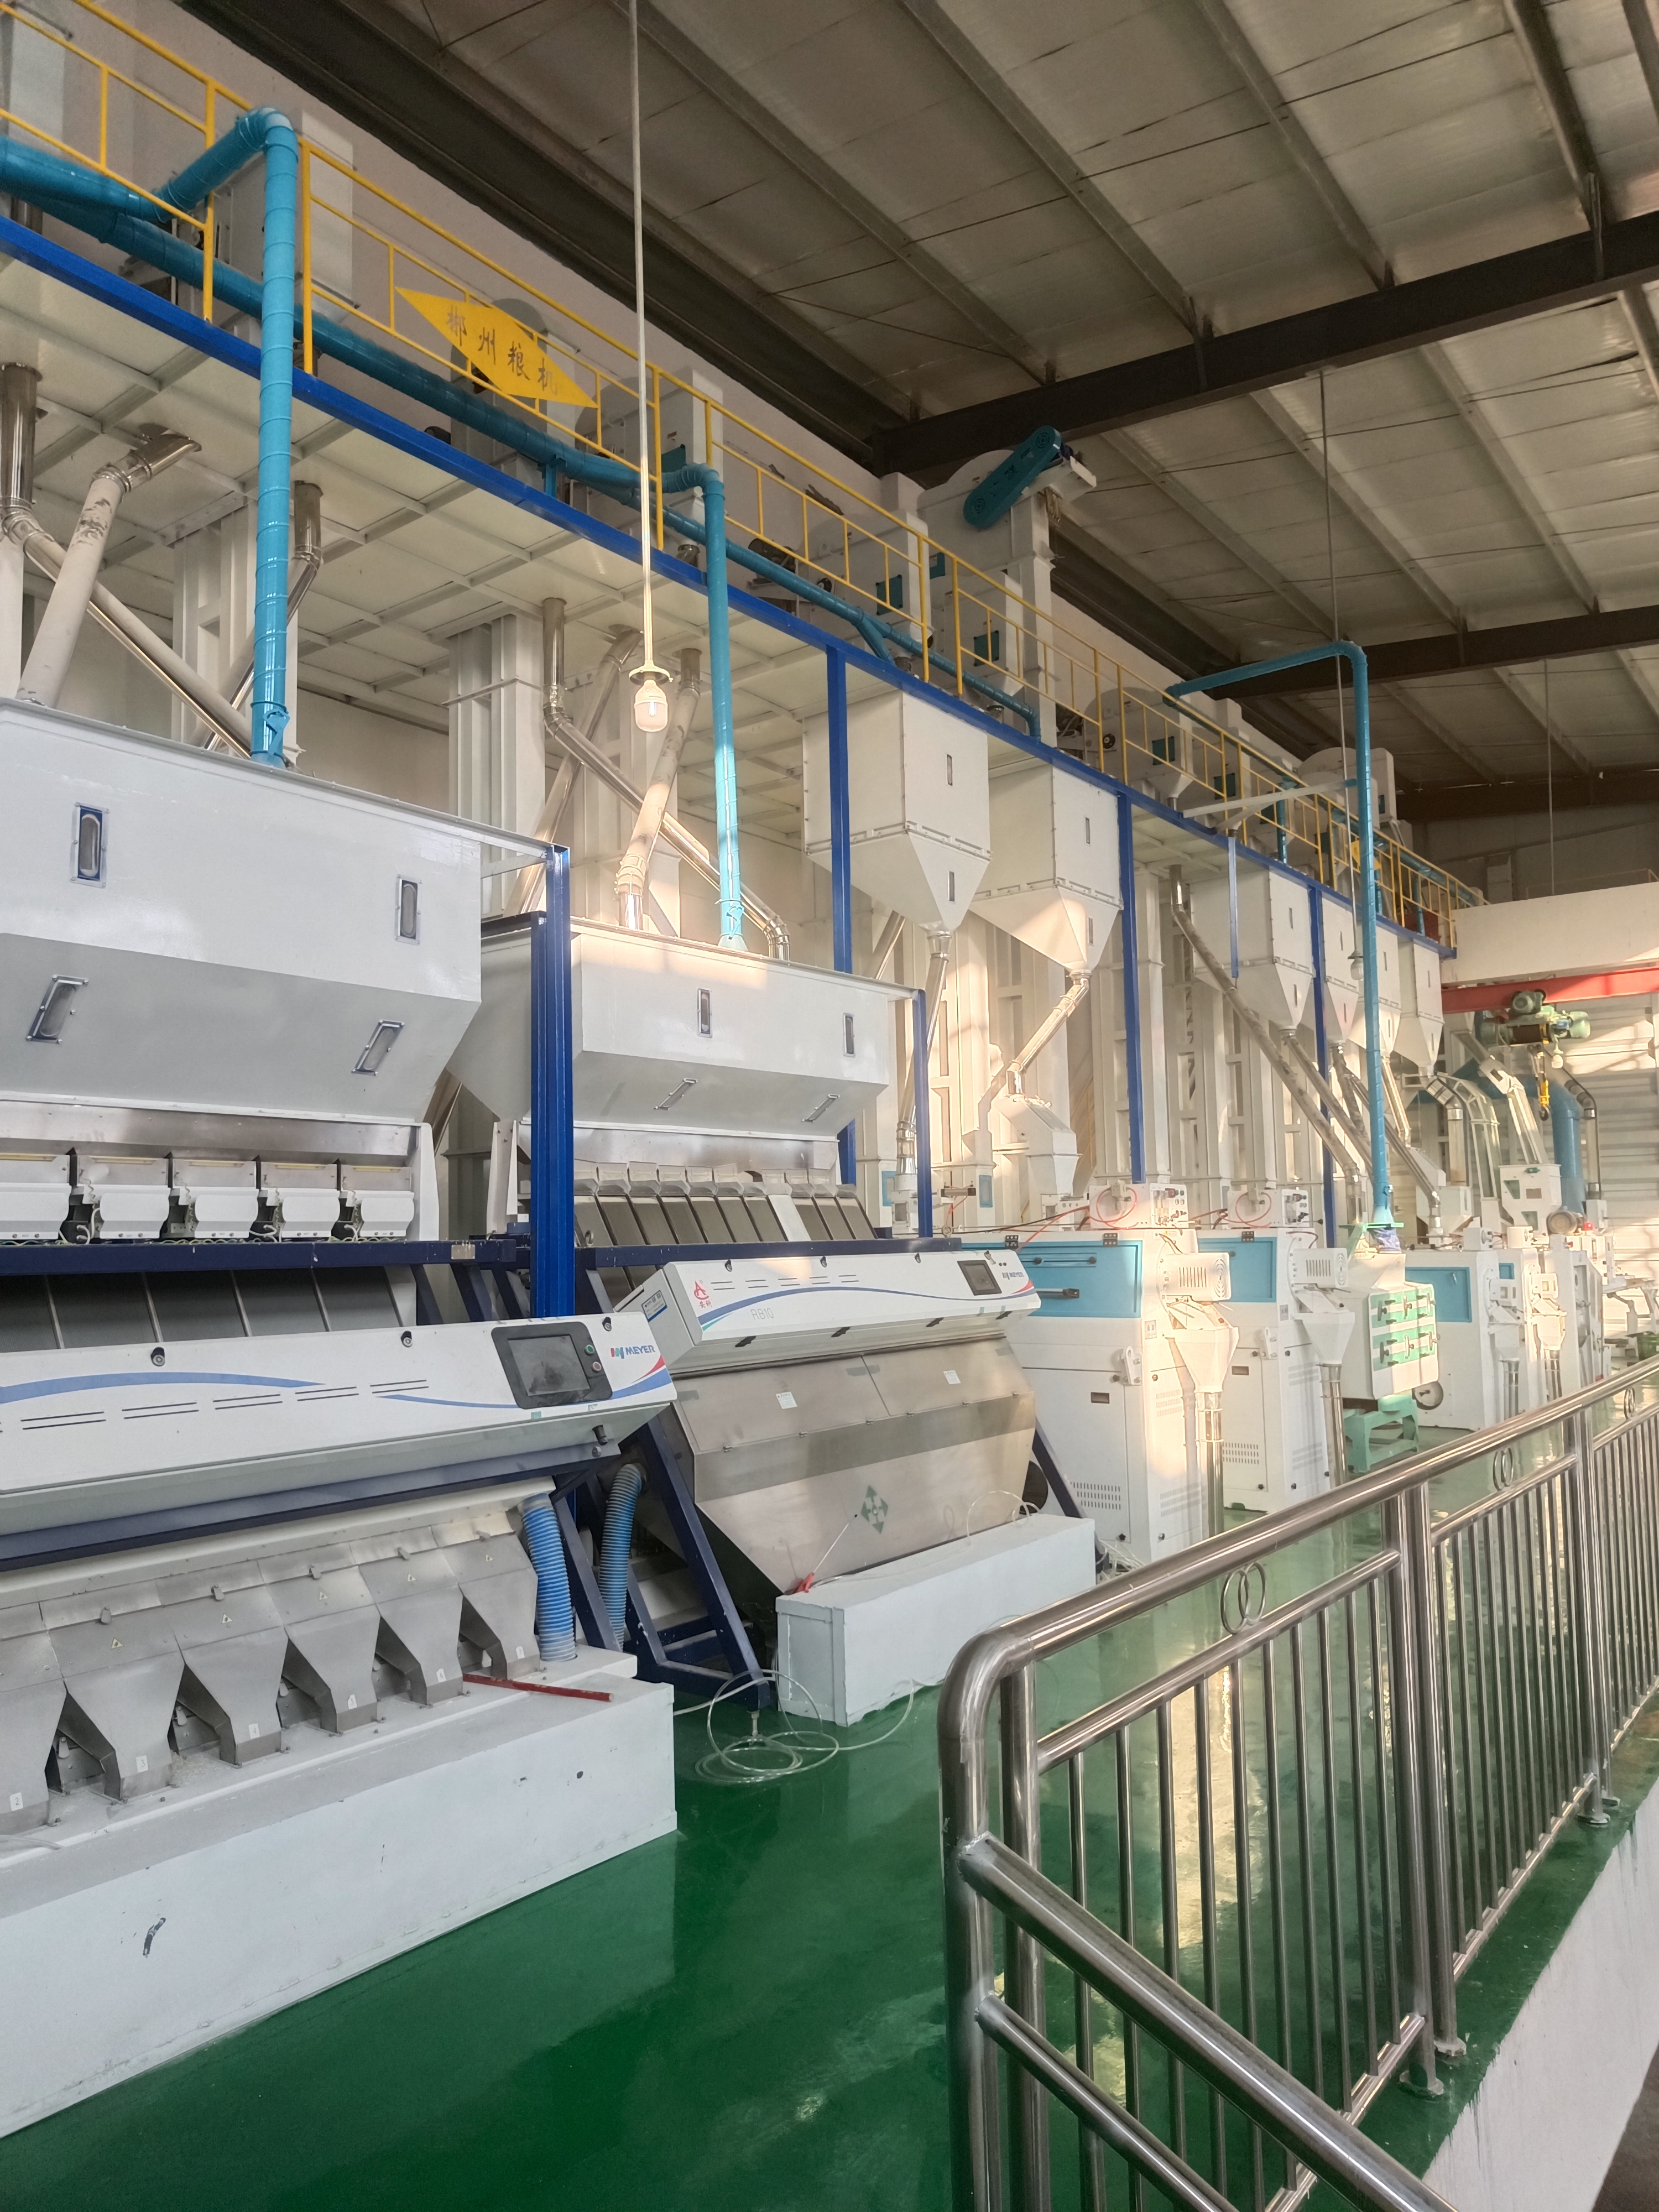 思南縣南江糧食購銷有限責任公司日產120噸大米生產線技術改造升級。